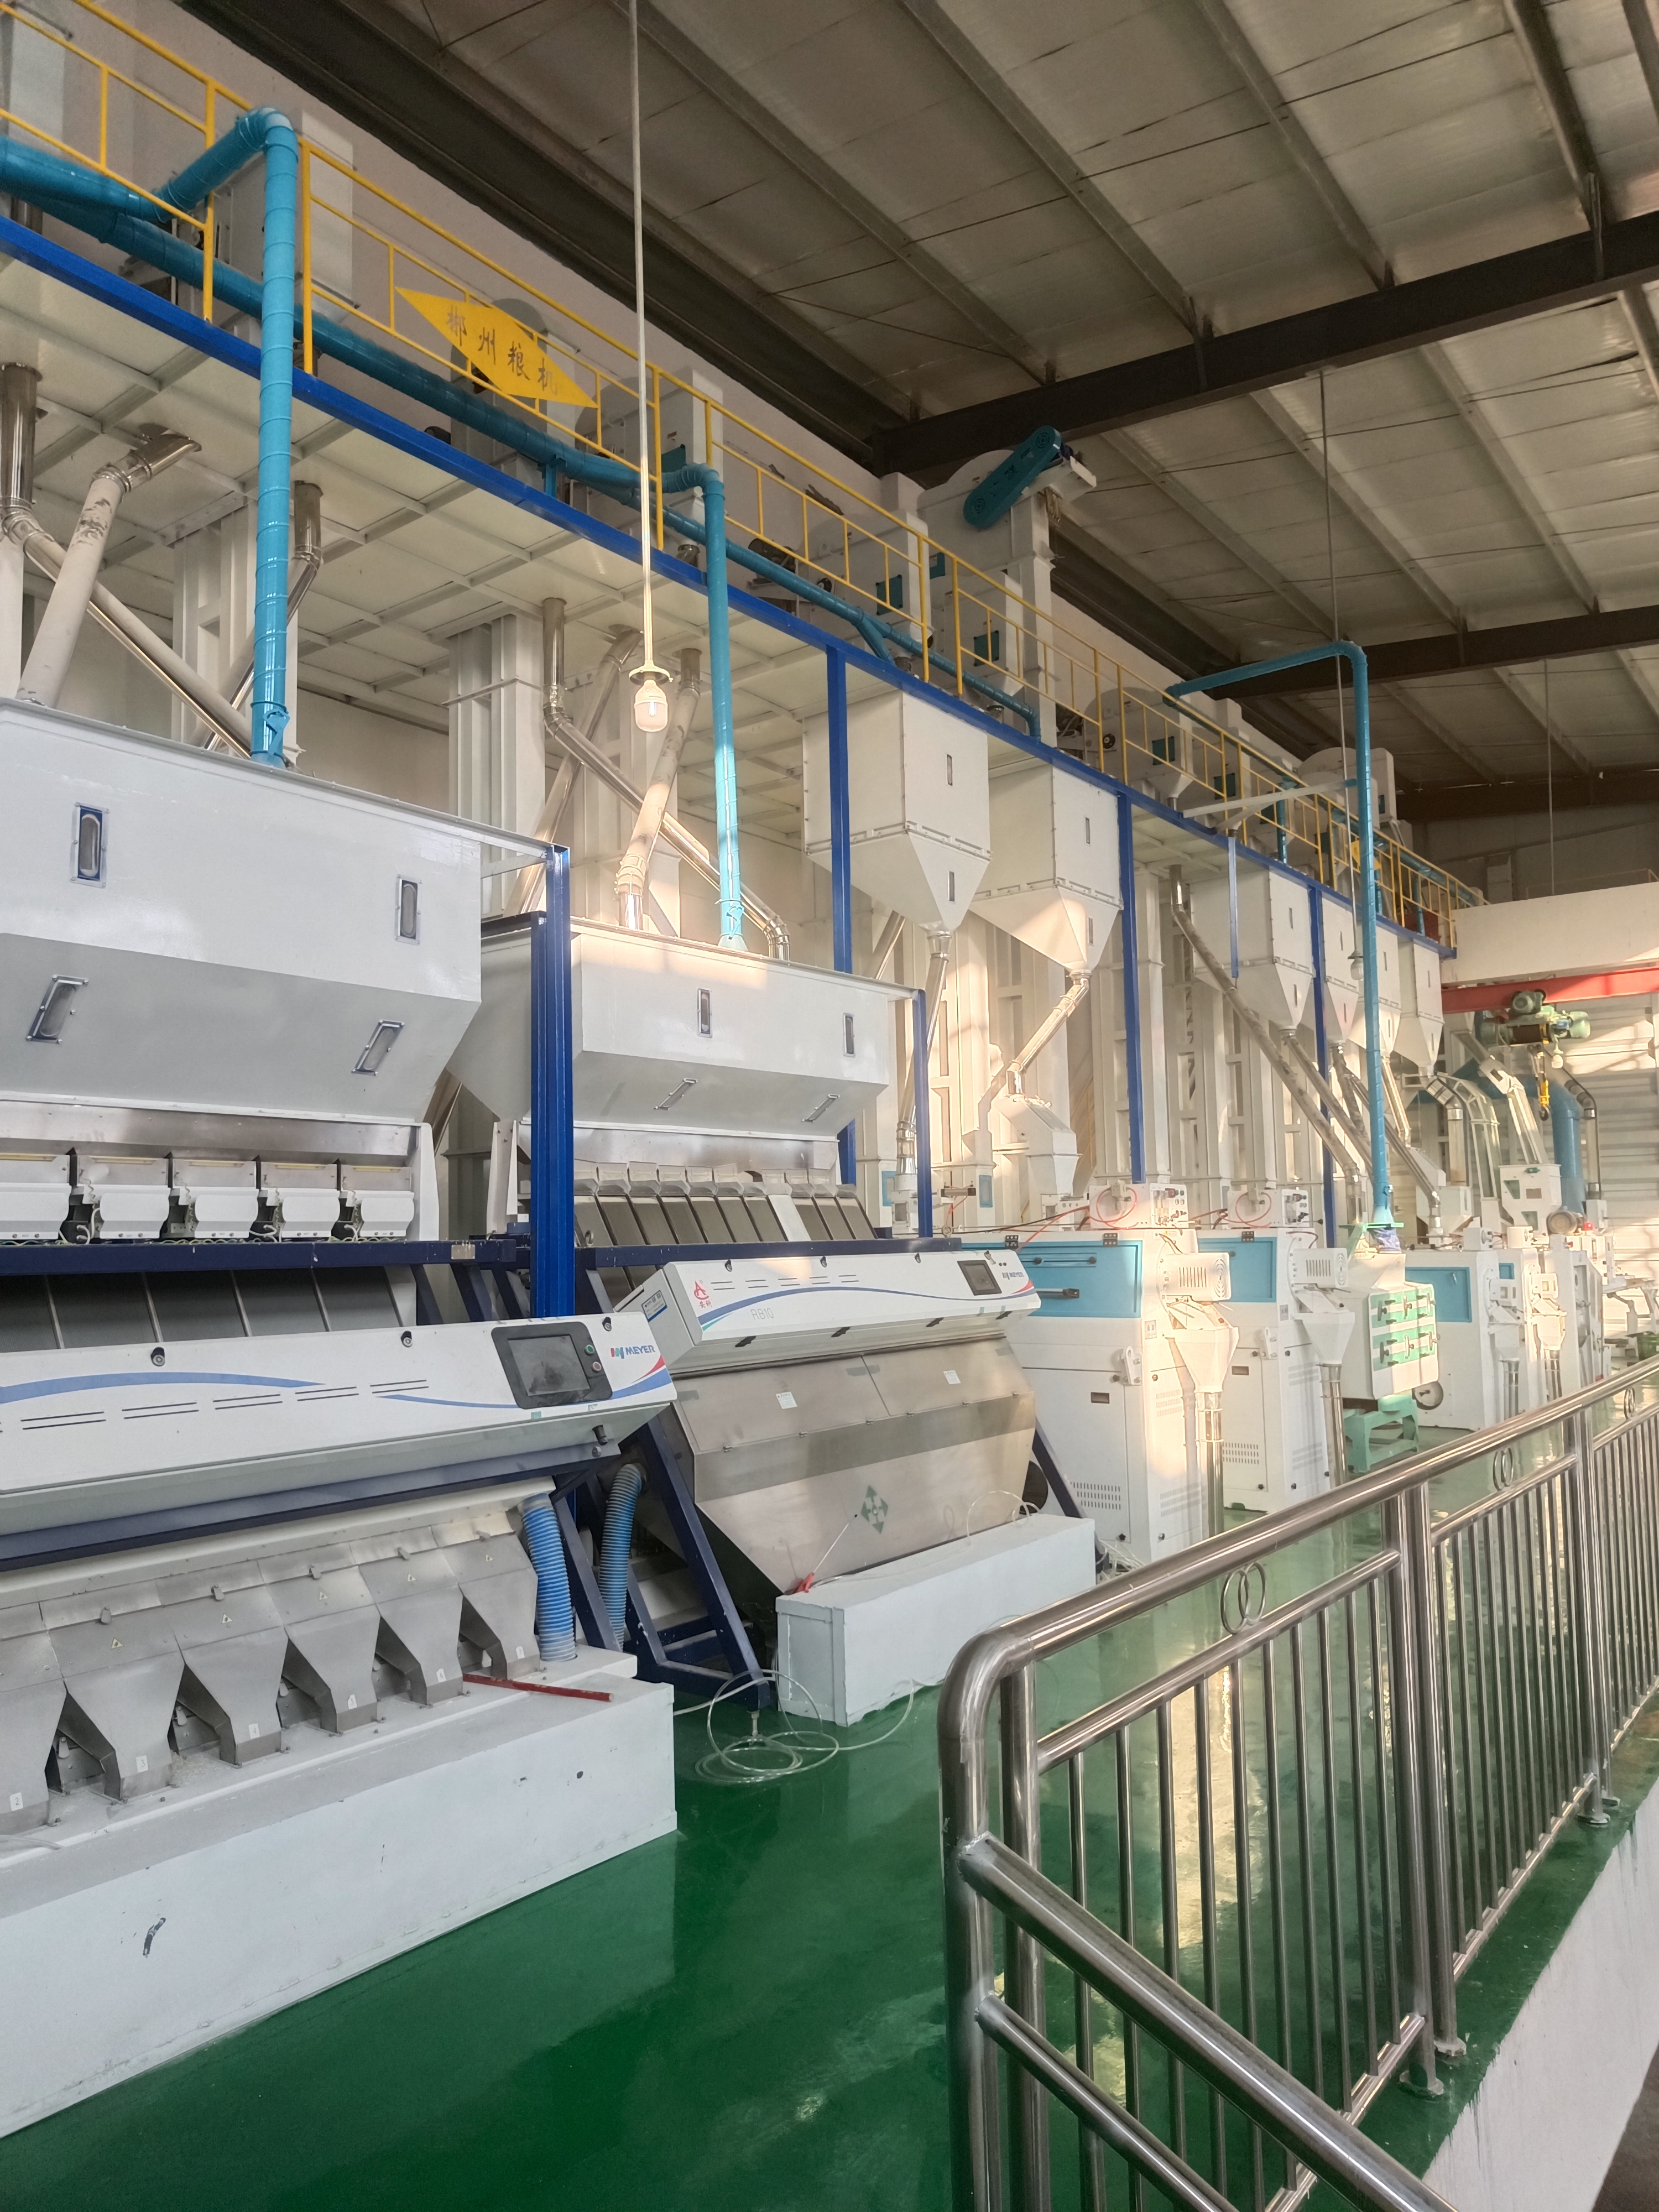 思南縣南江糧食購銷有限責任公司日產120噸大米生產線技術改造升級。